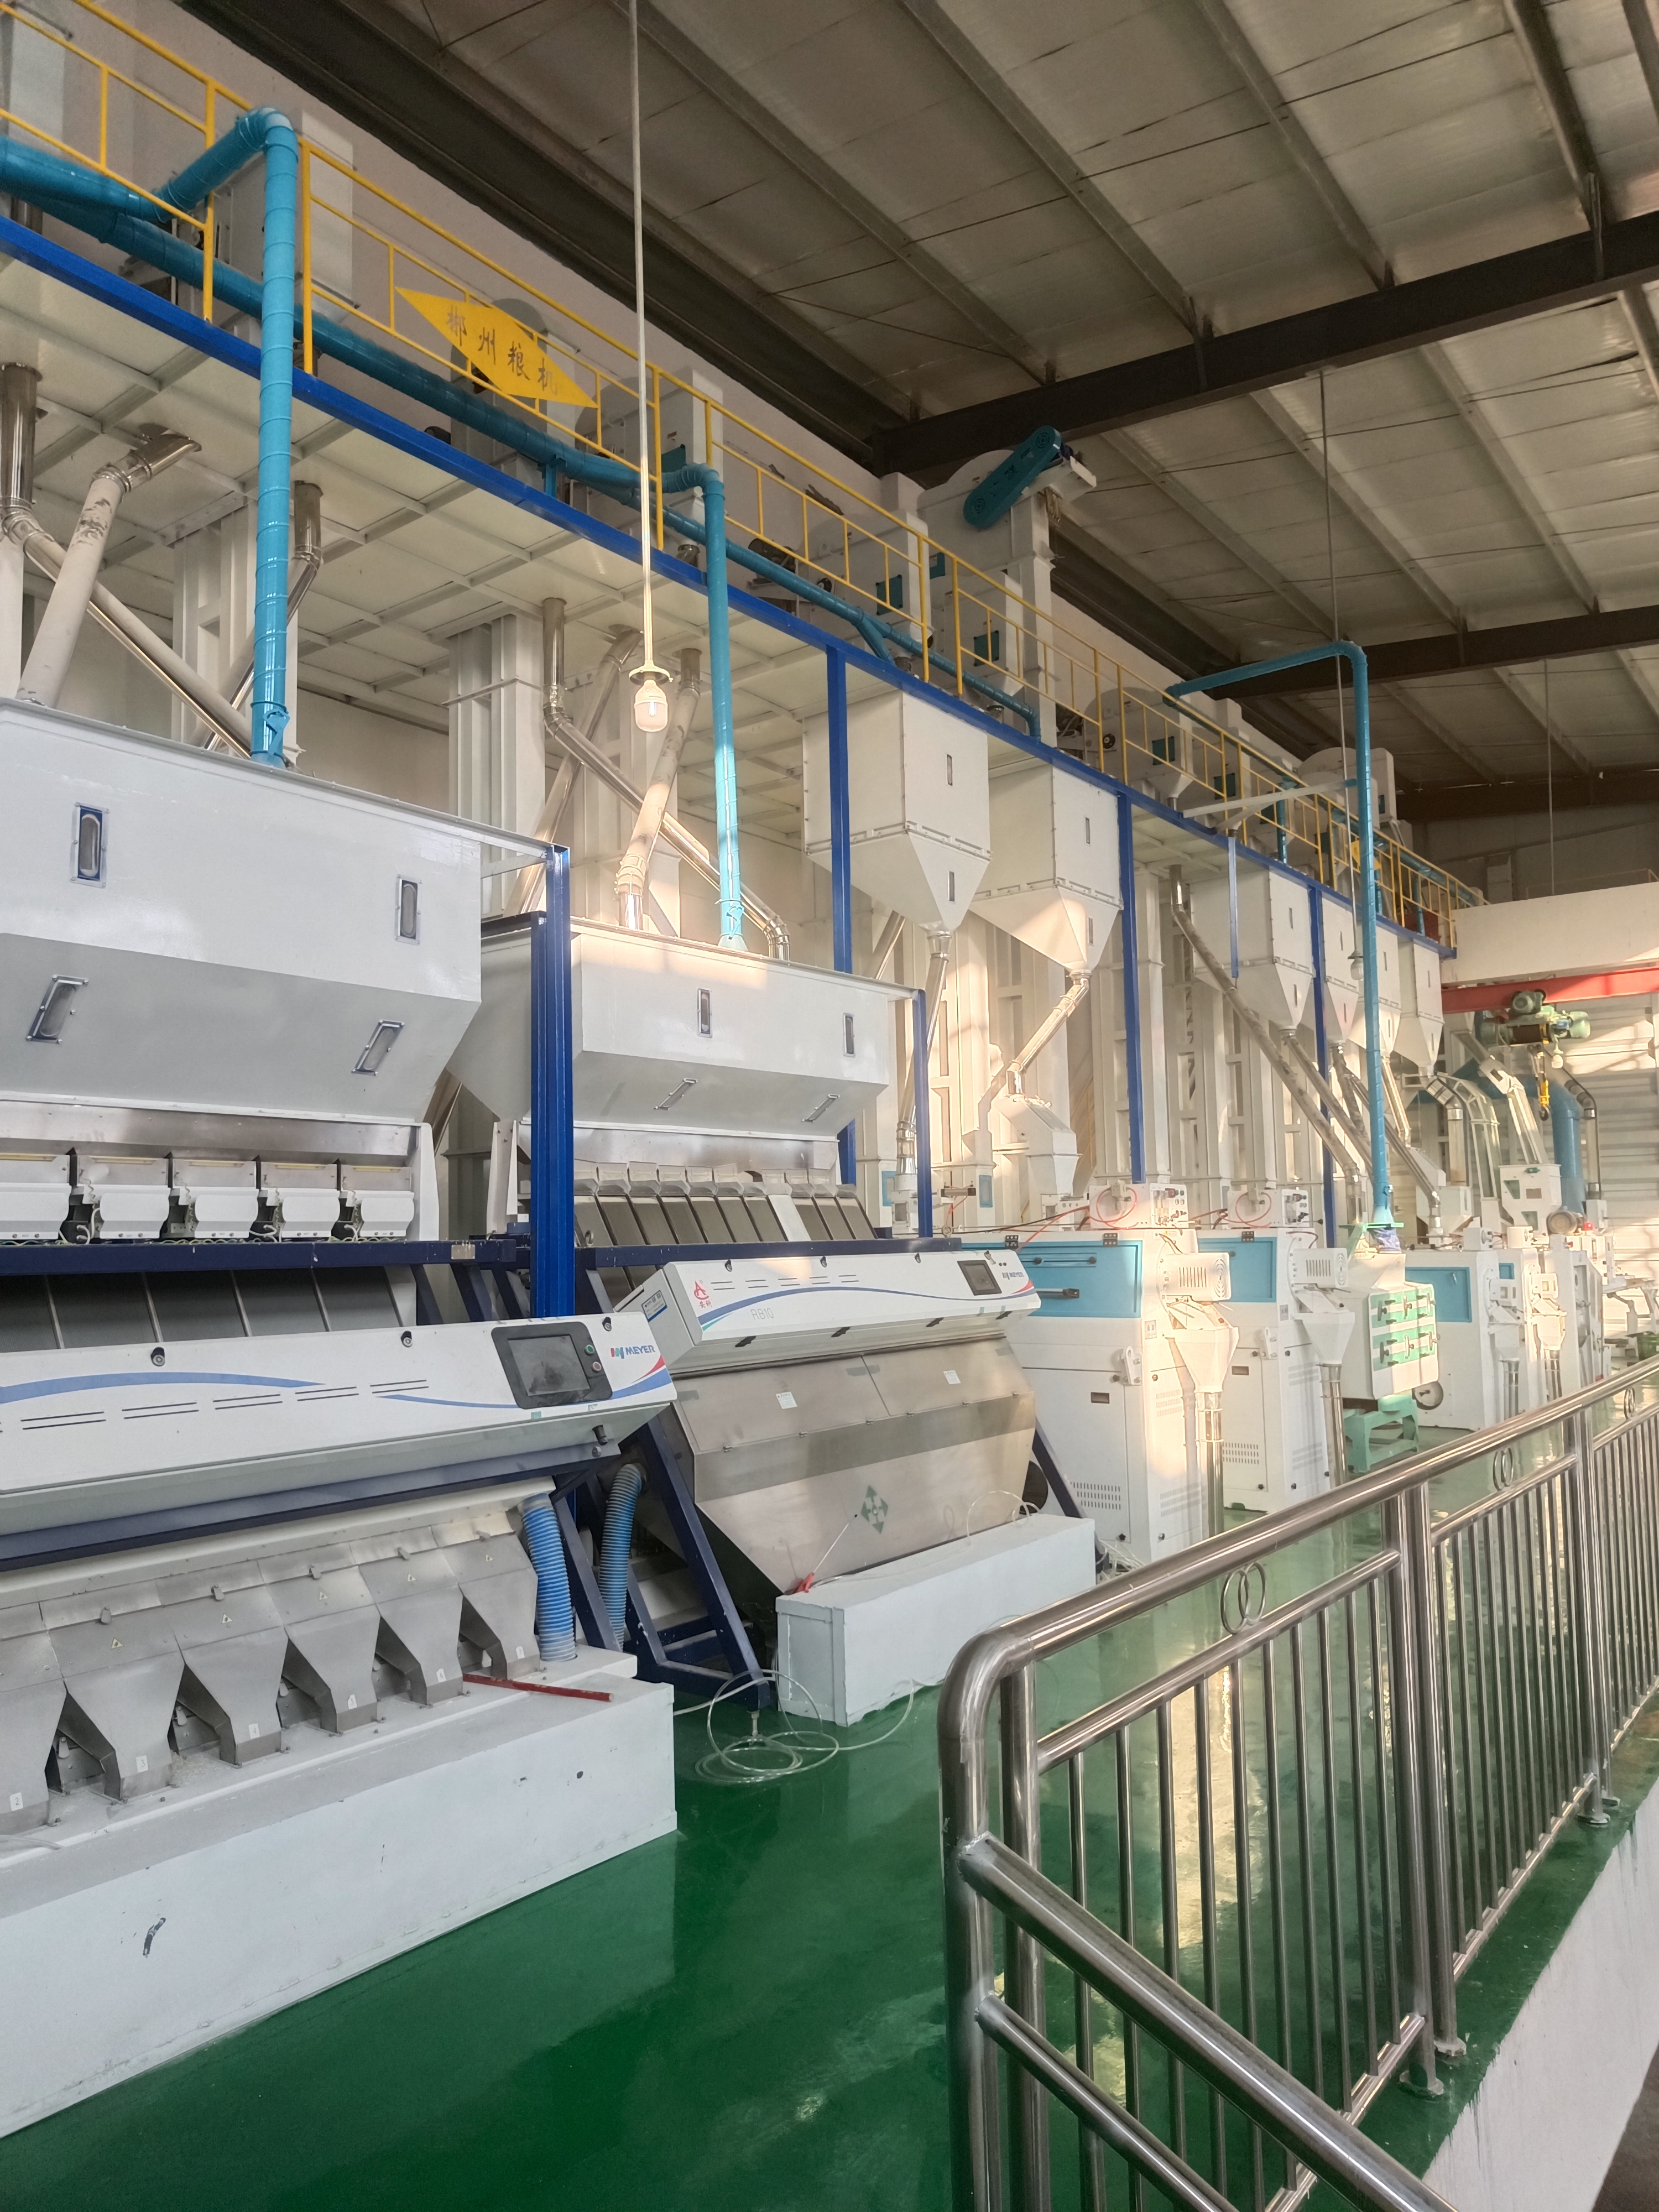 思南縣南江糧食購銷有限責任公司日產120噸大米生產線技術改造升級。